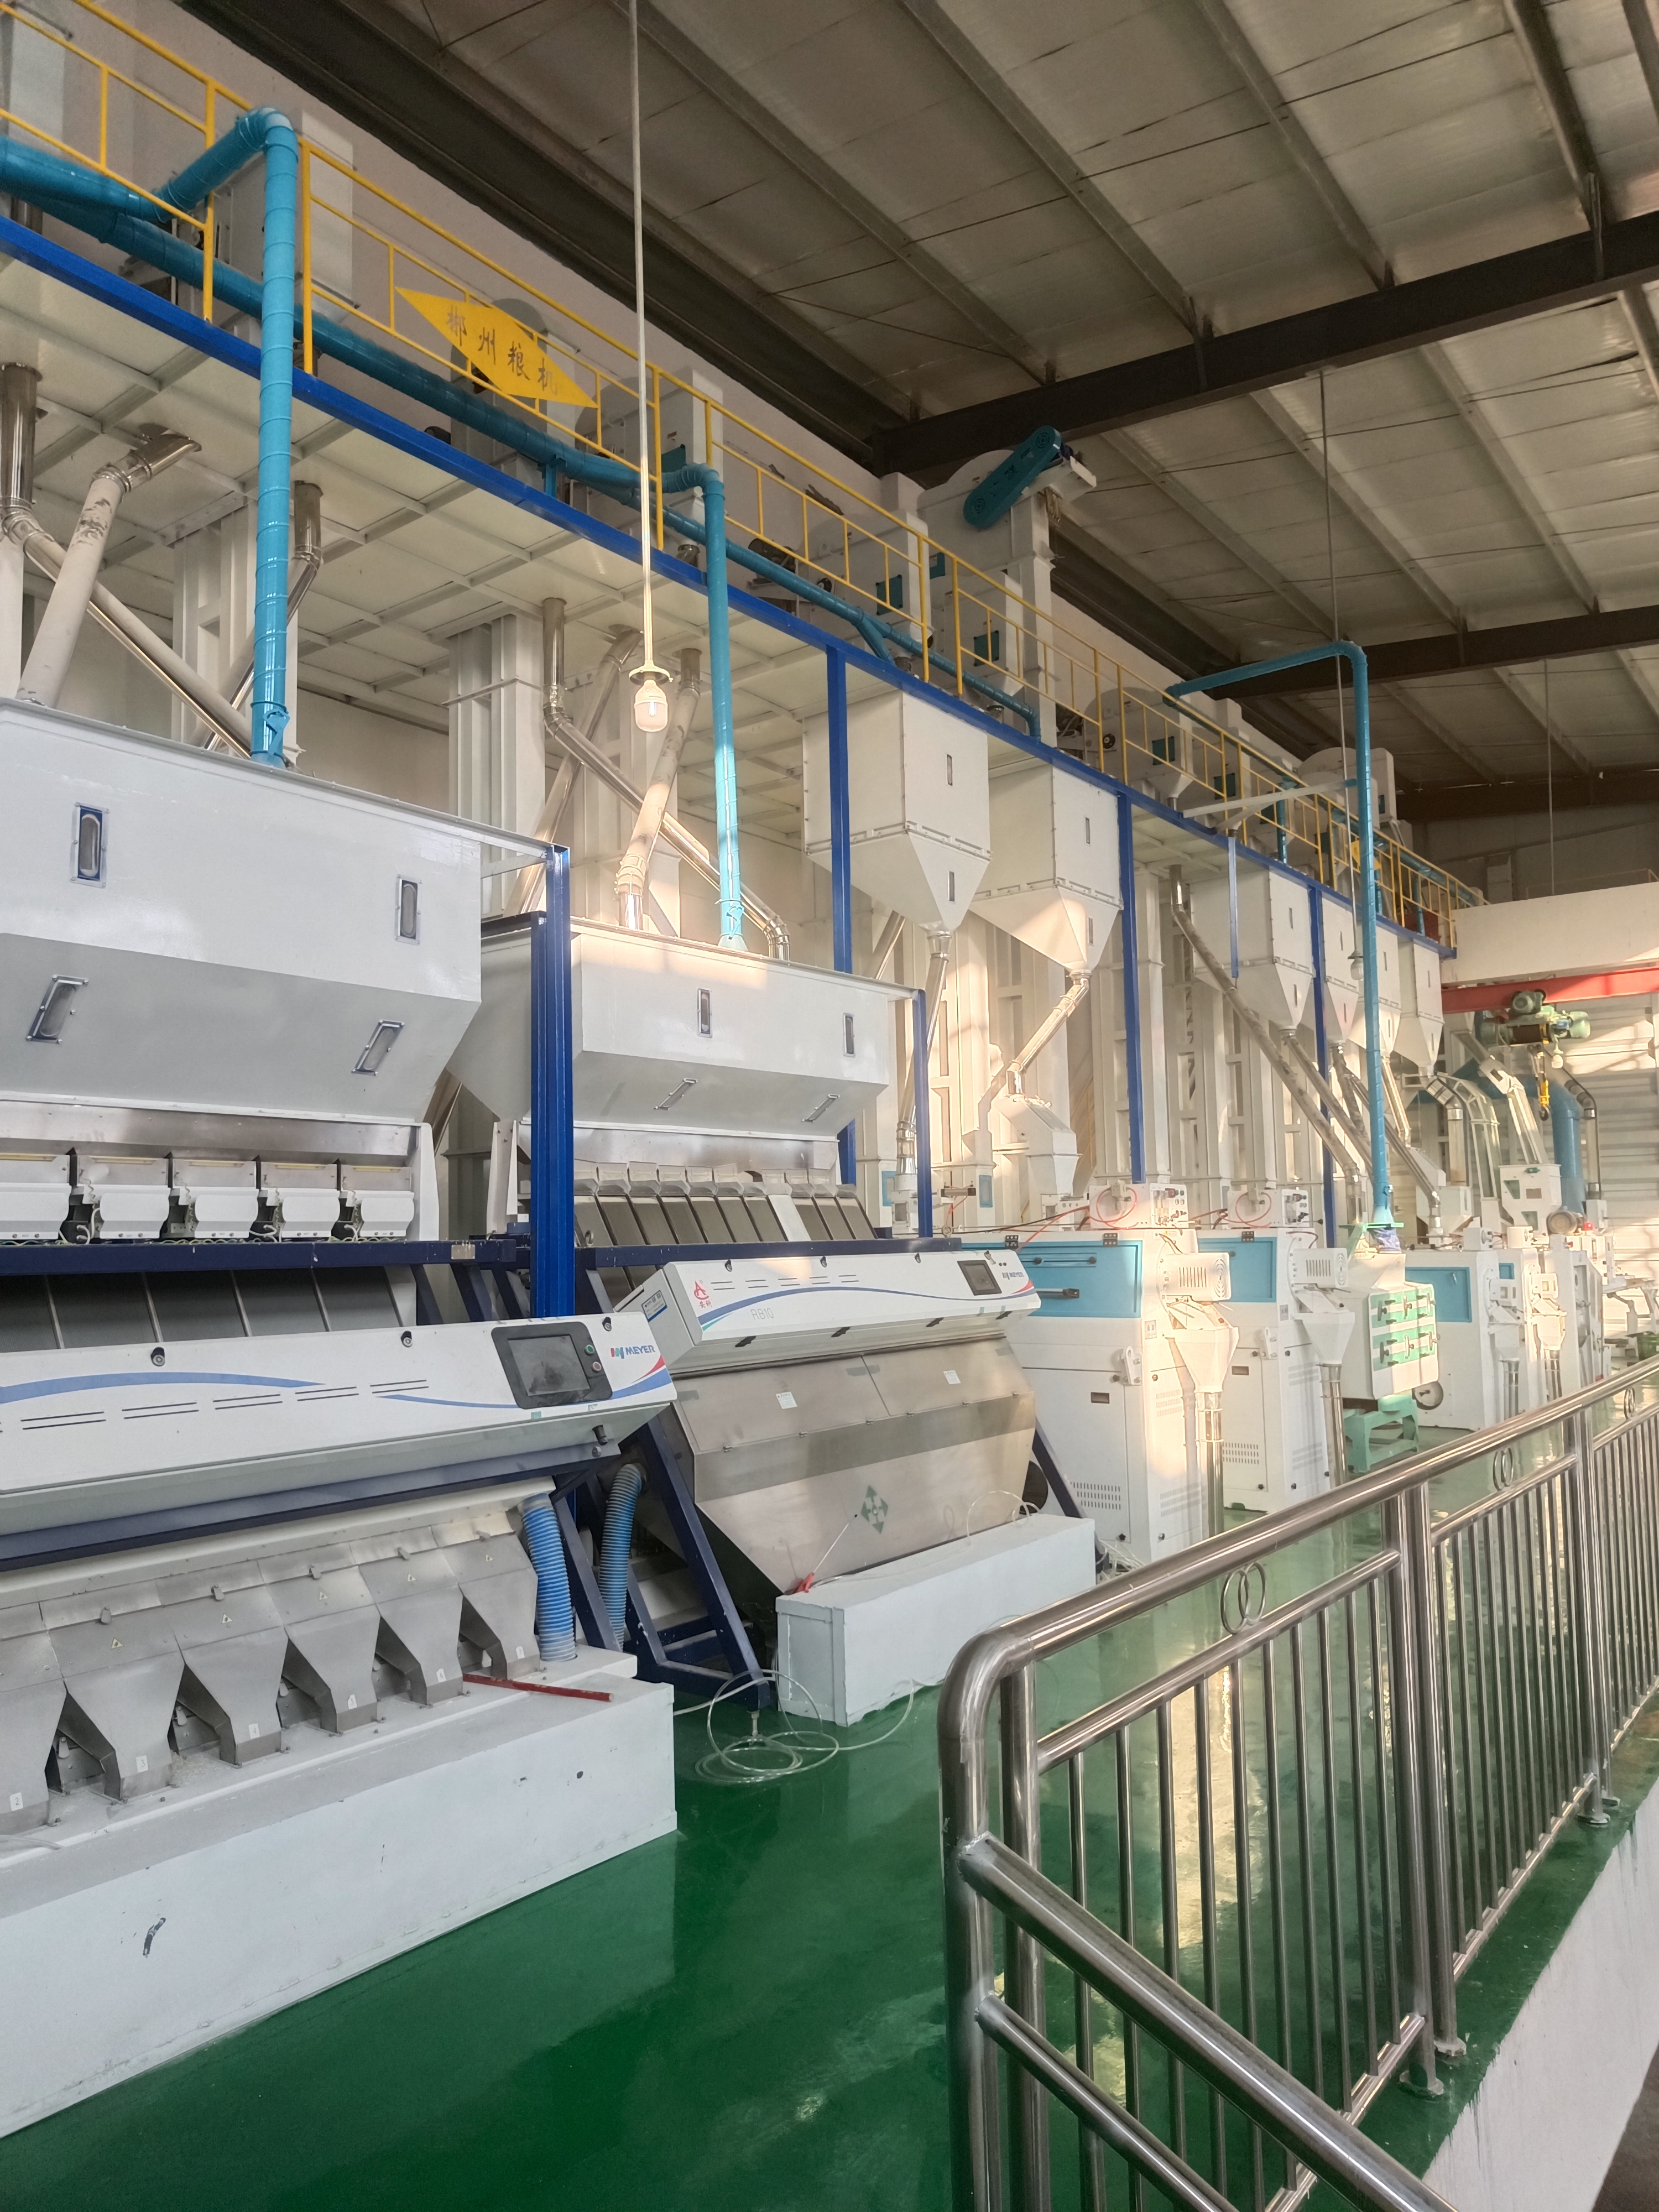 思南縣南江糧食購銷有限責任公司日產120噸大米生產線技術改造升級。